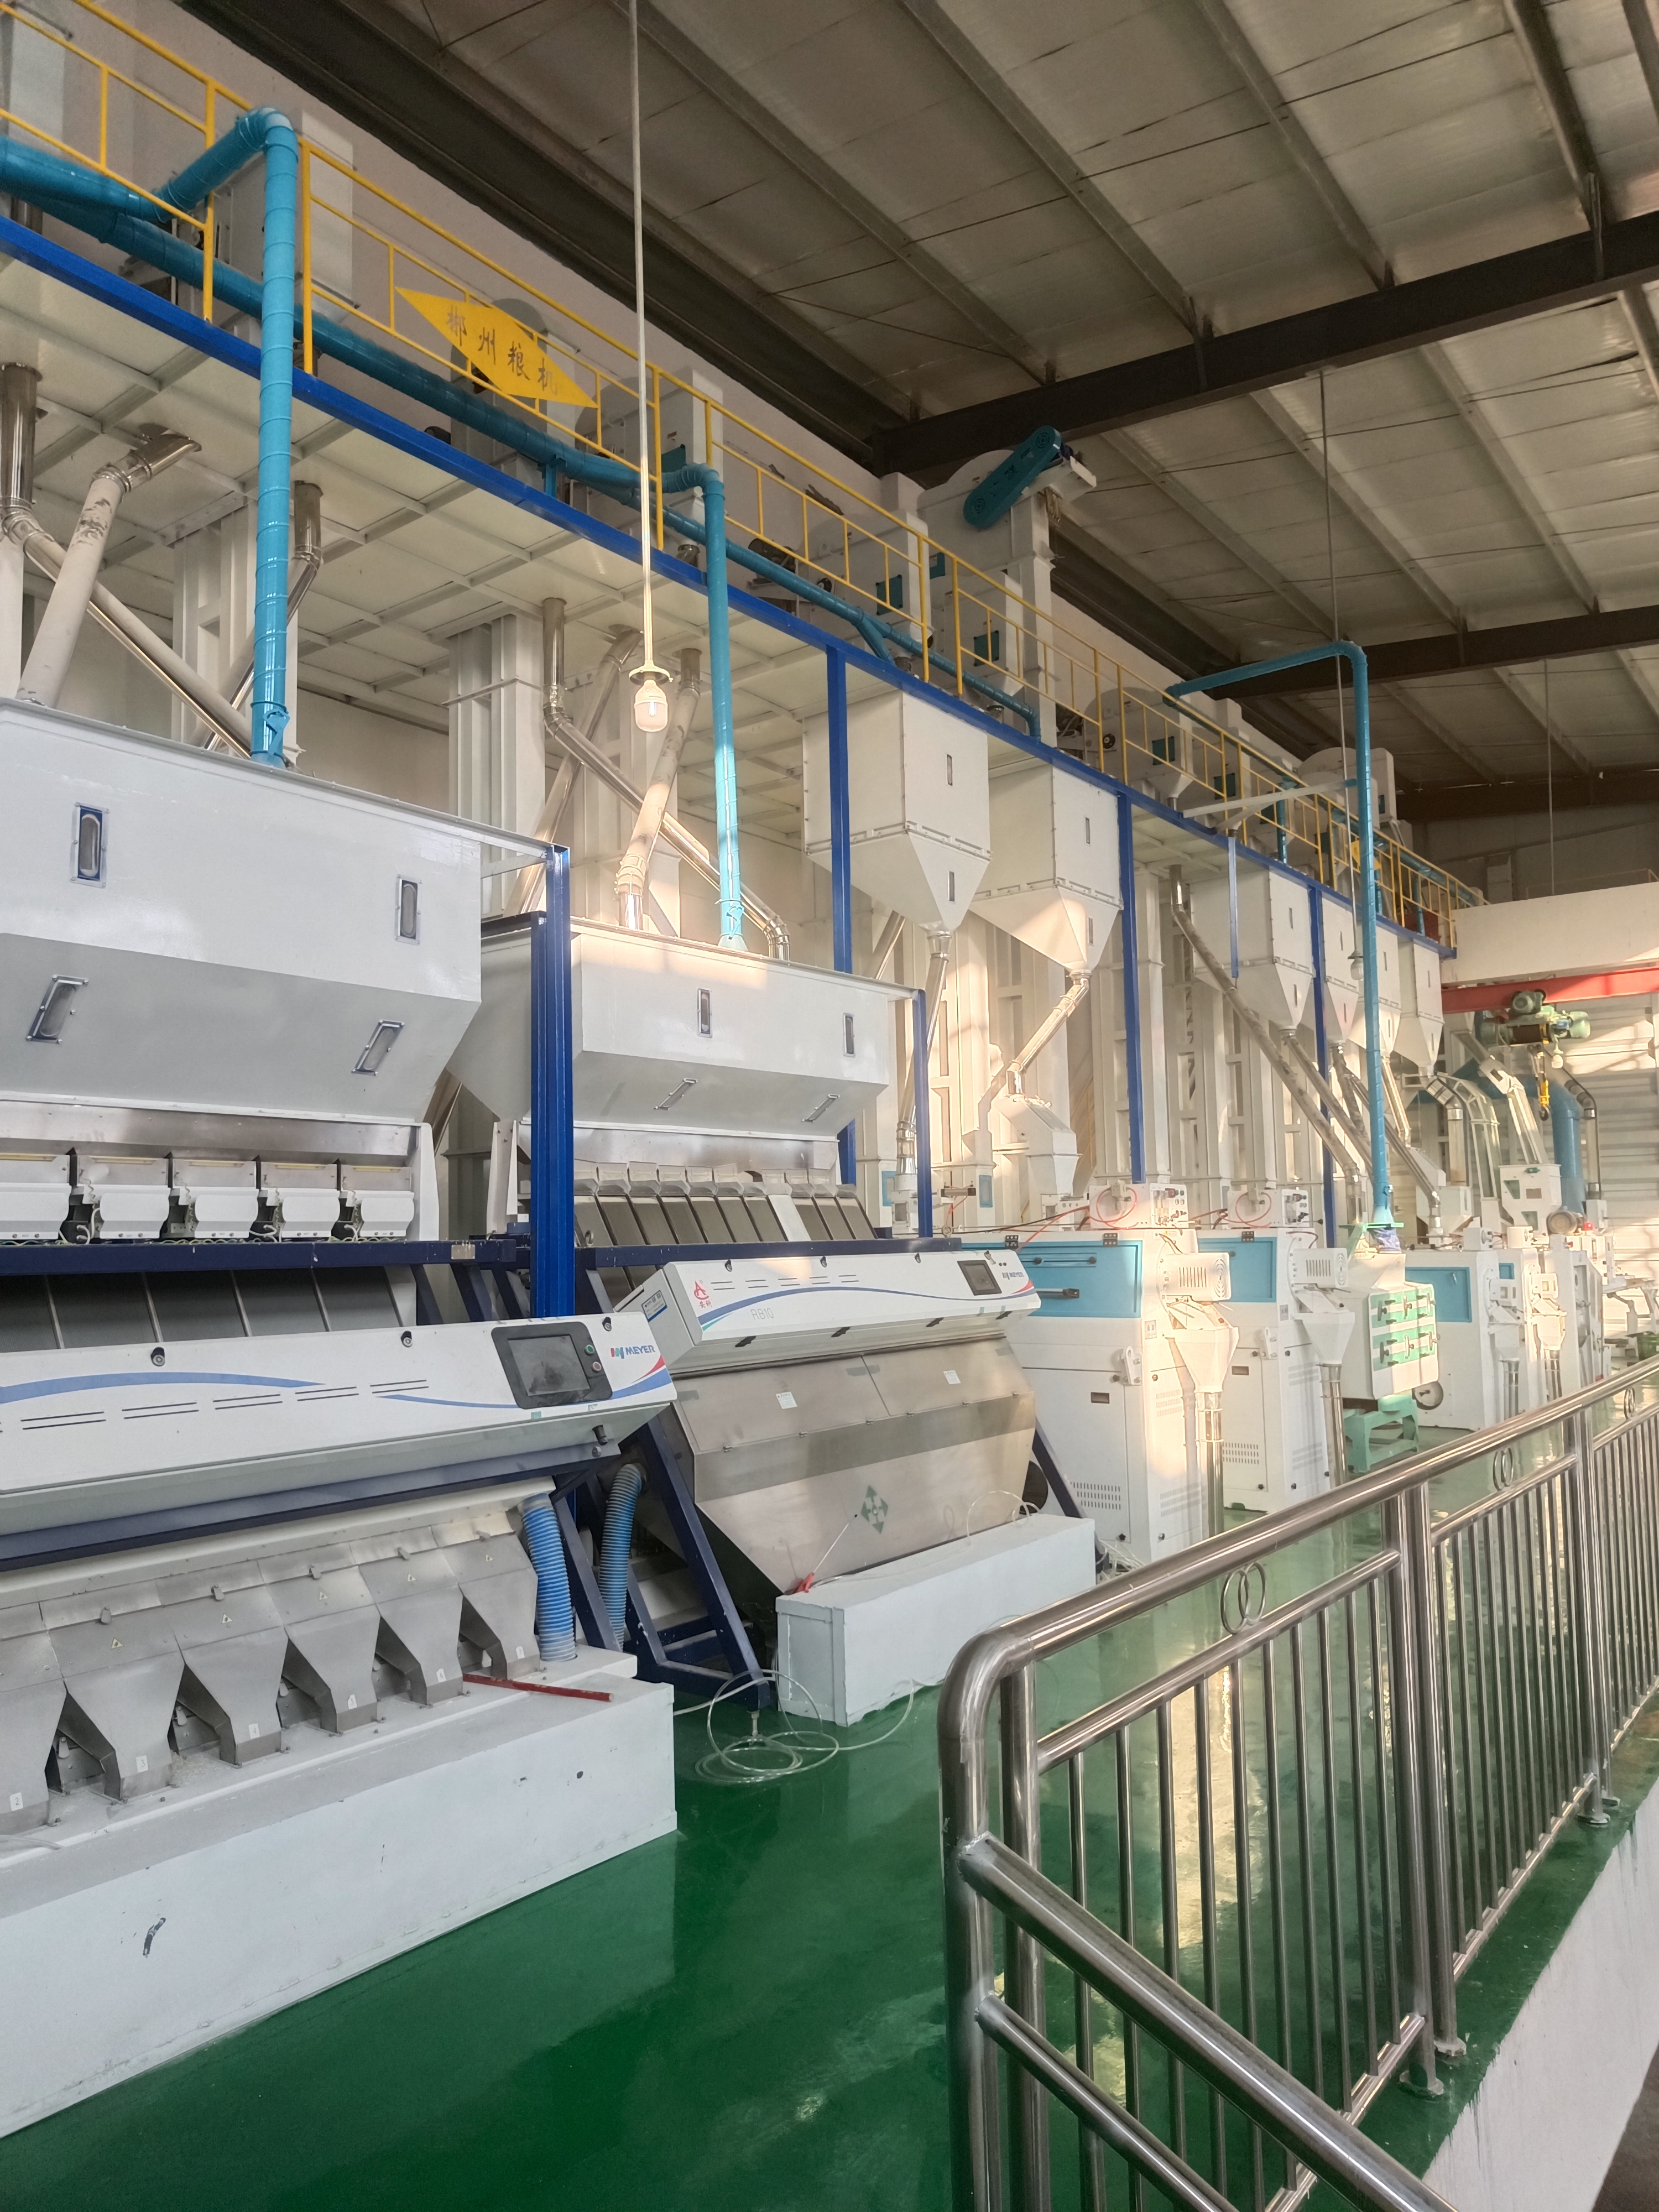 思南縣南江糧食購銷有限責任公司日產120噸大米生產線技術改造升級。